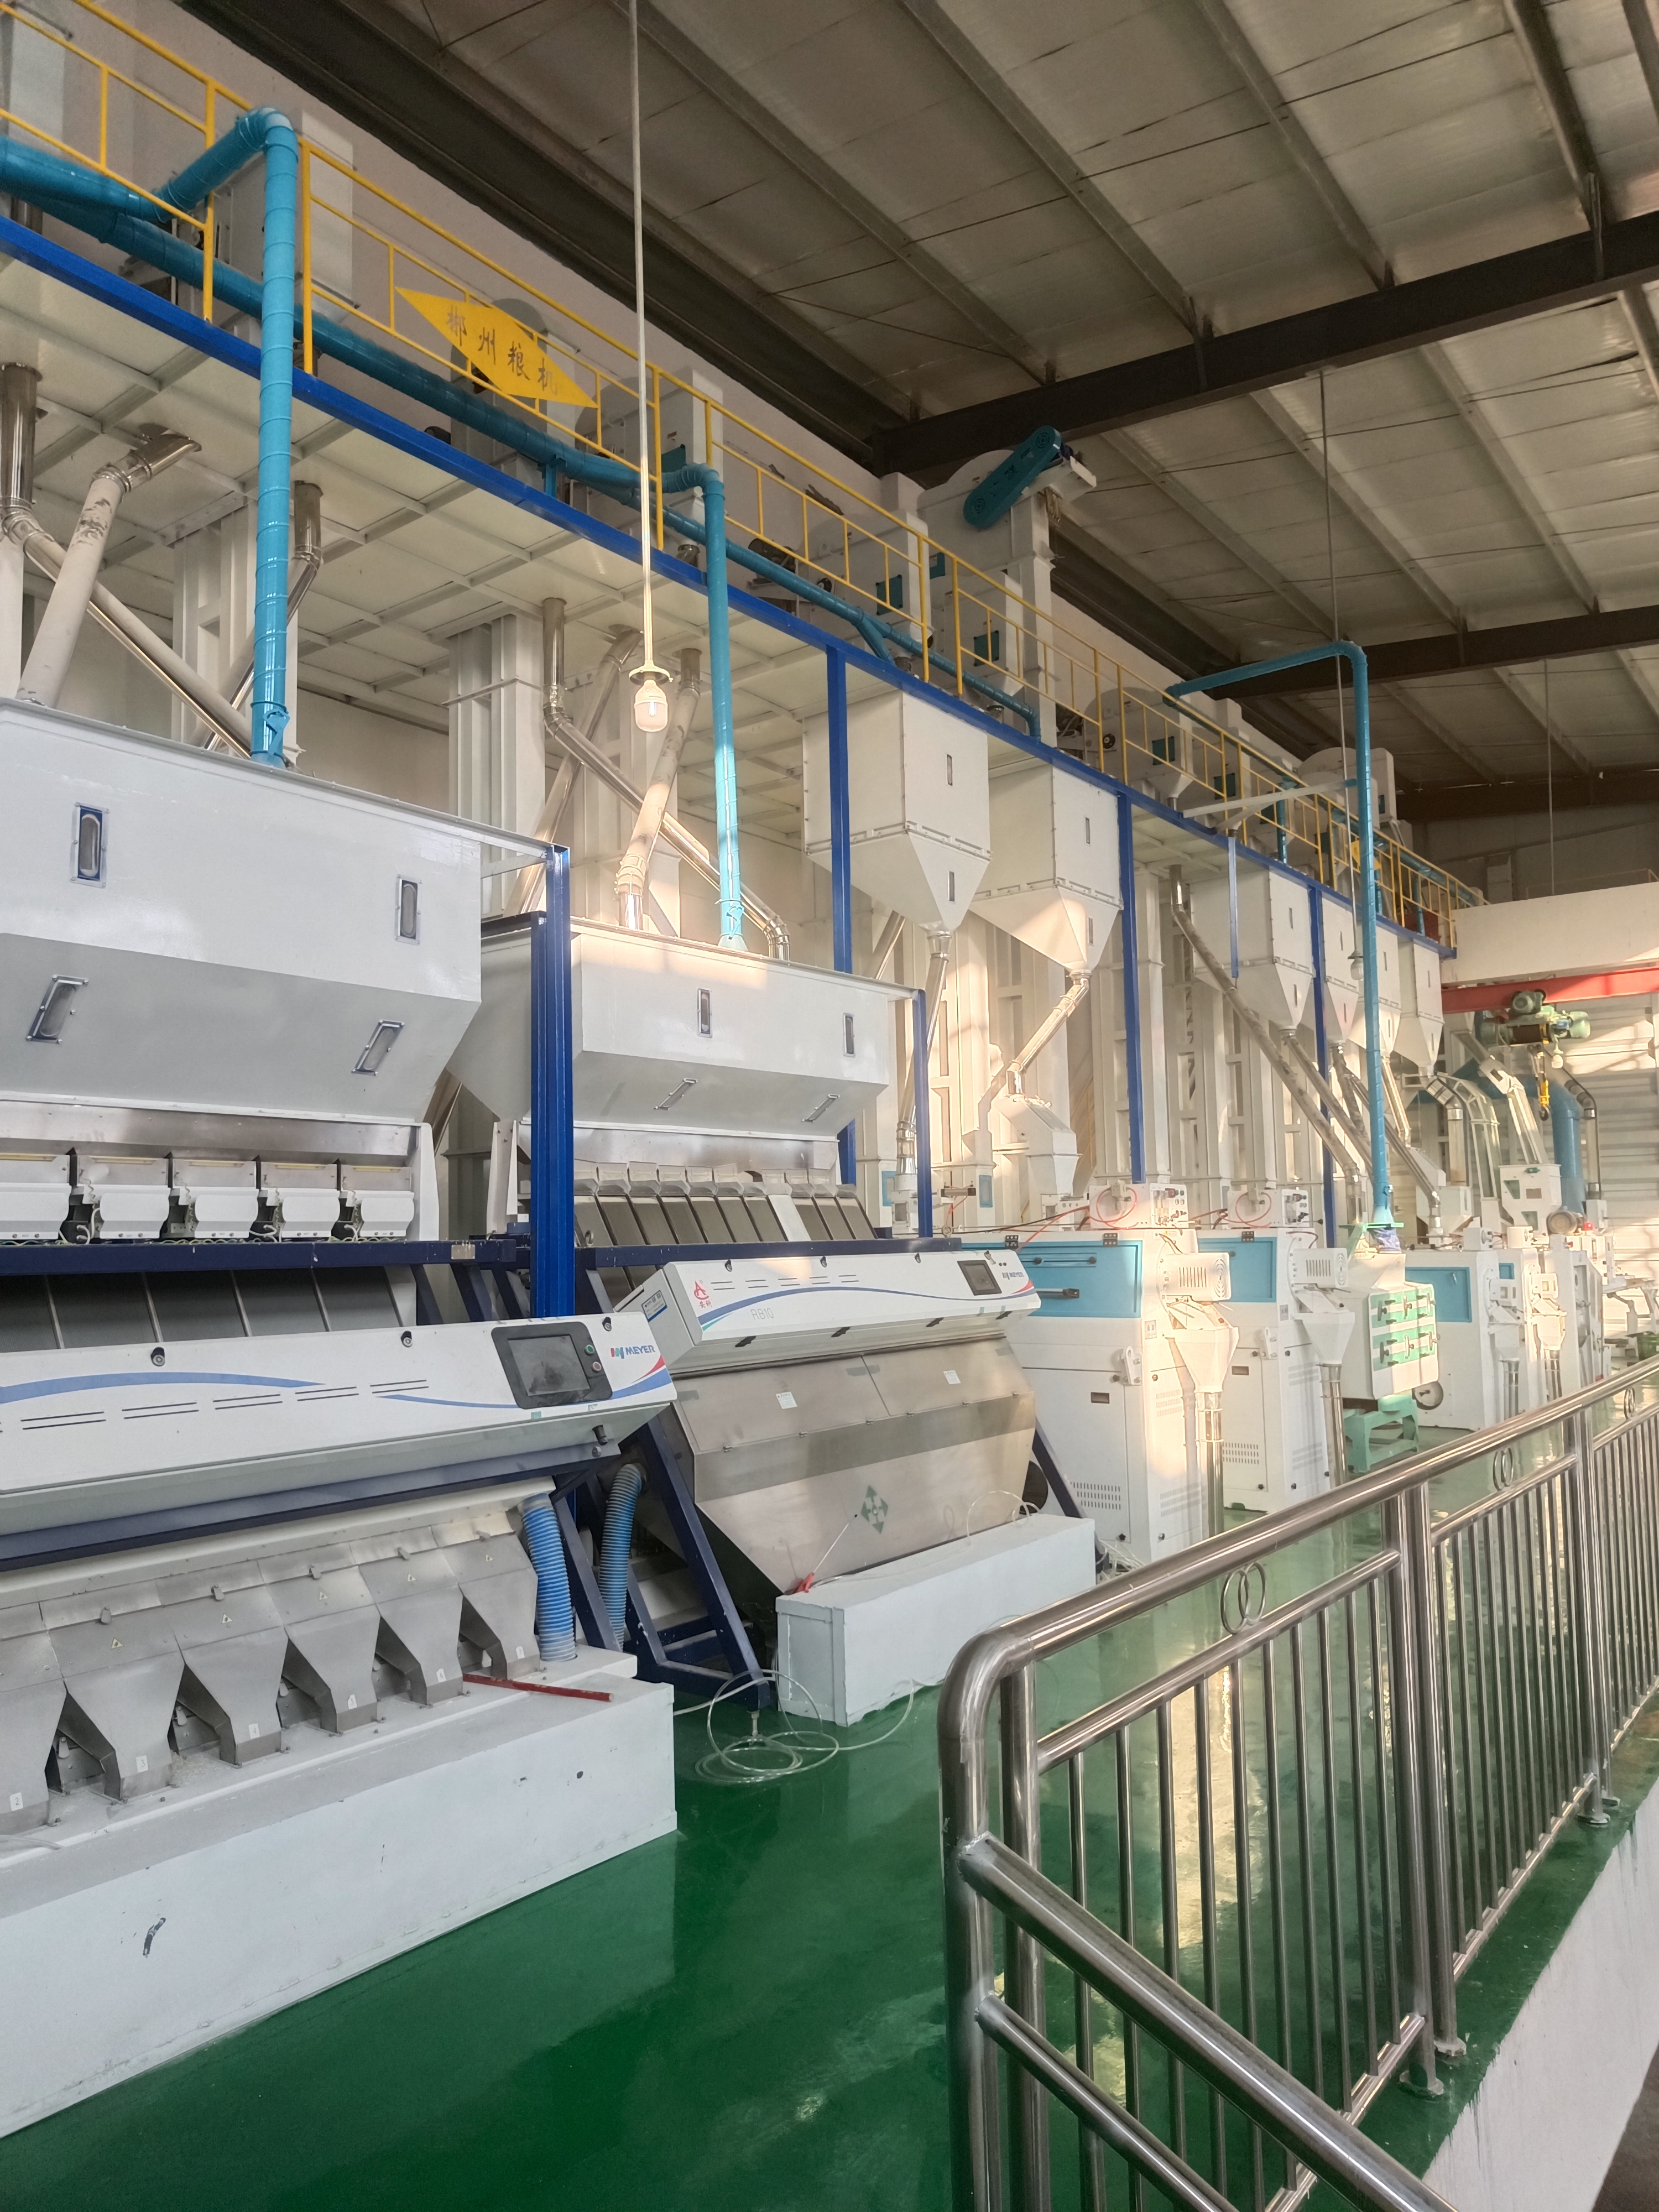 思南縣南江糧食購銷有限責任公司日產120噸大米生產線技術改造升級。